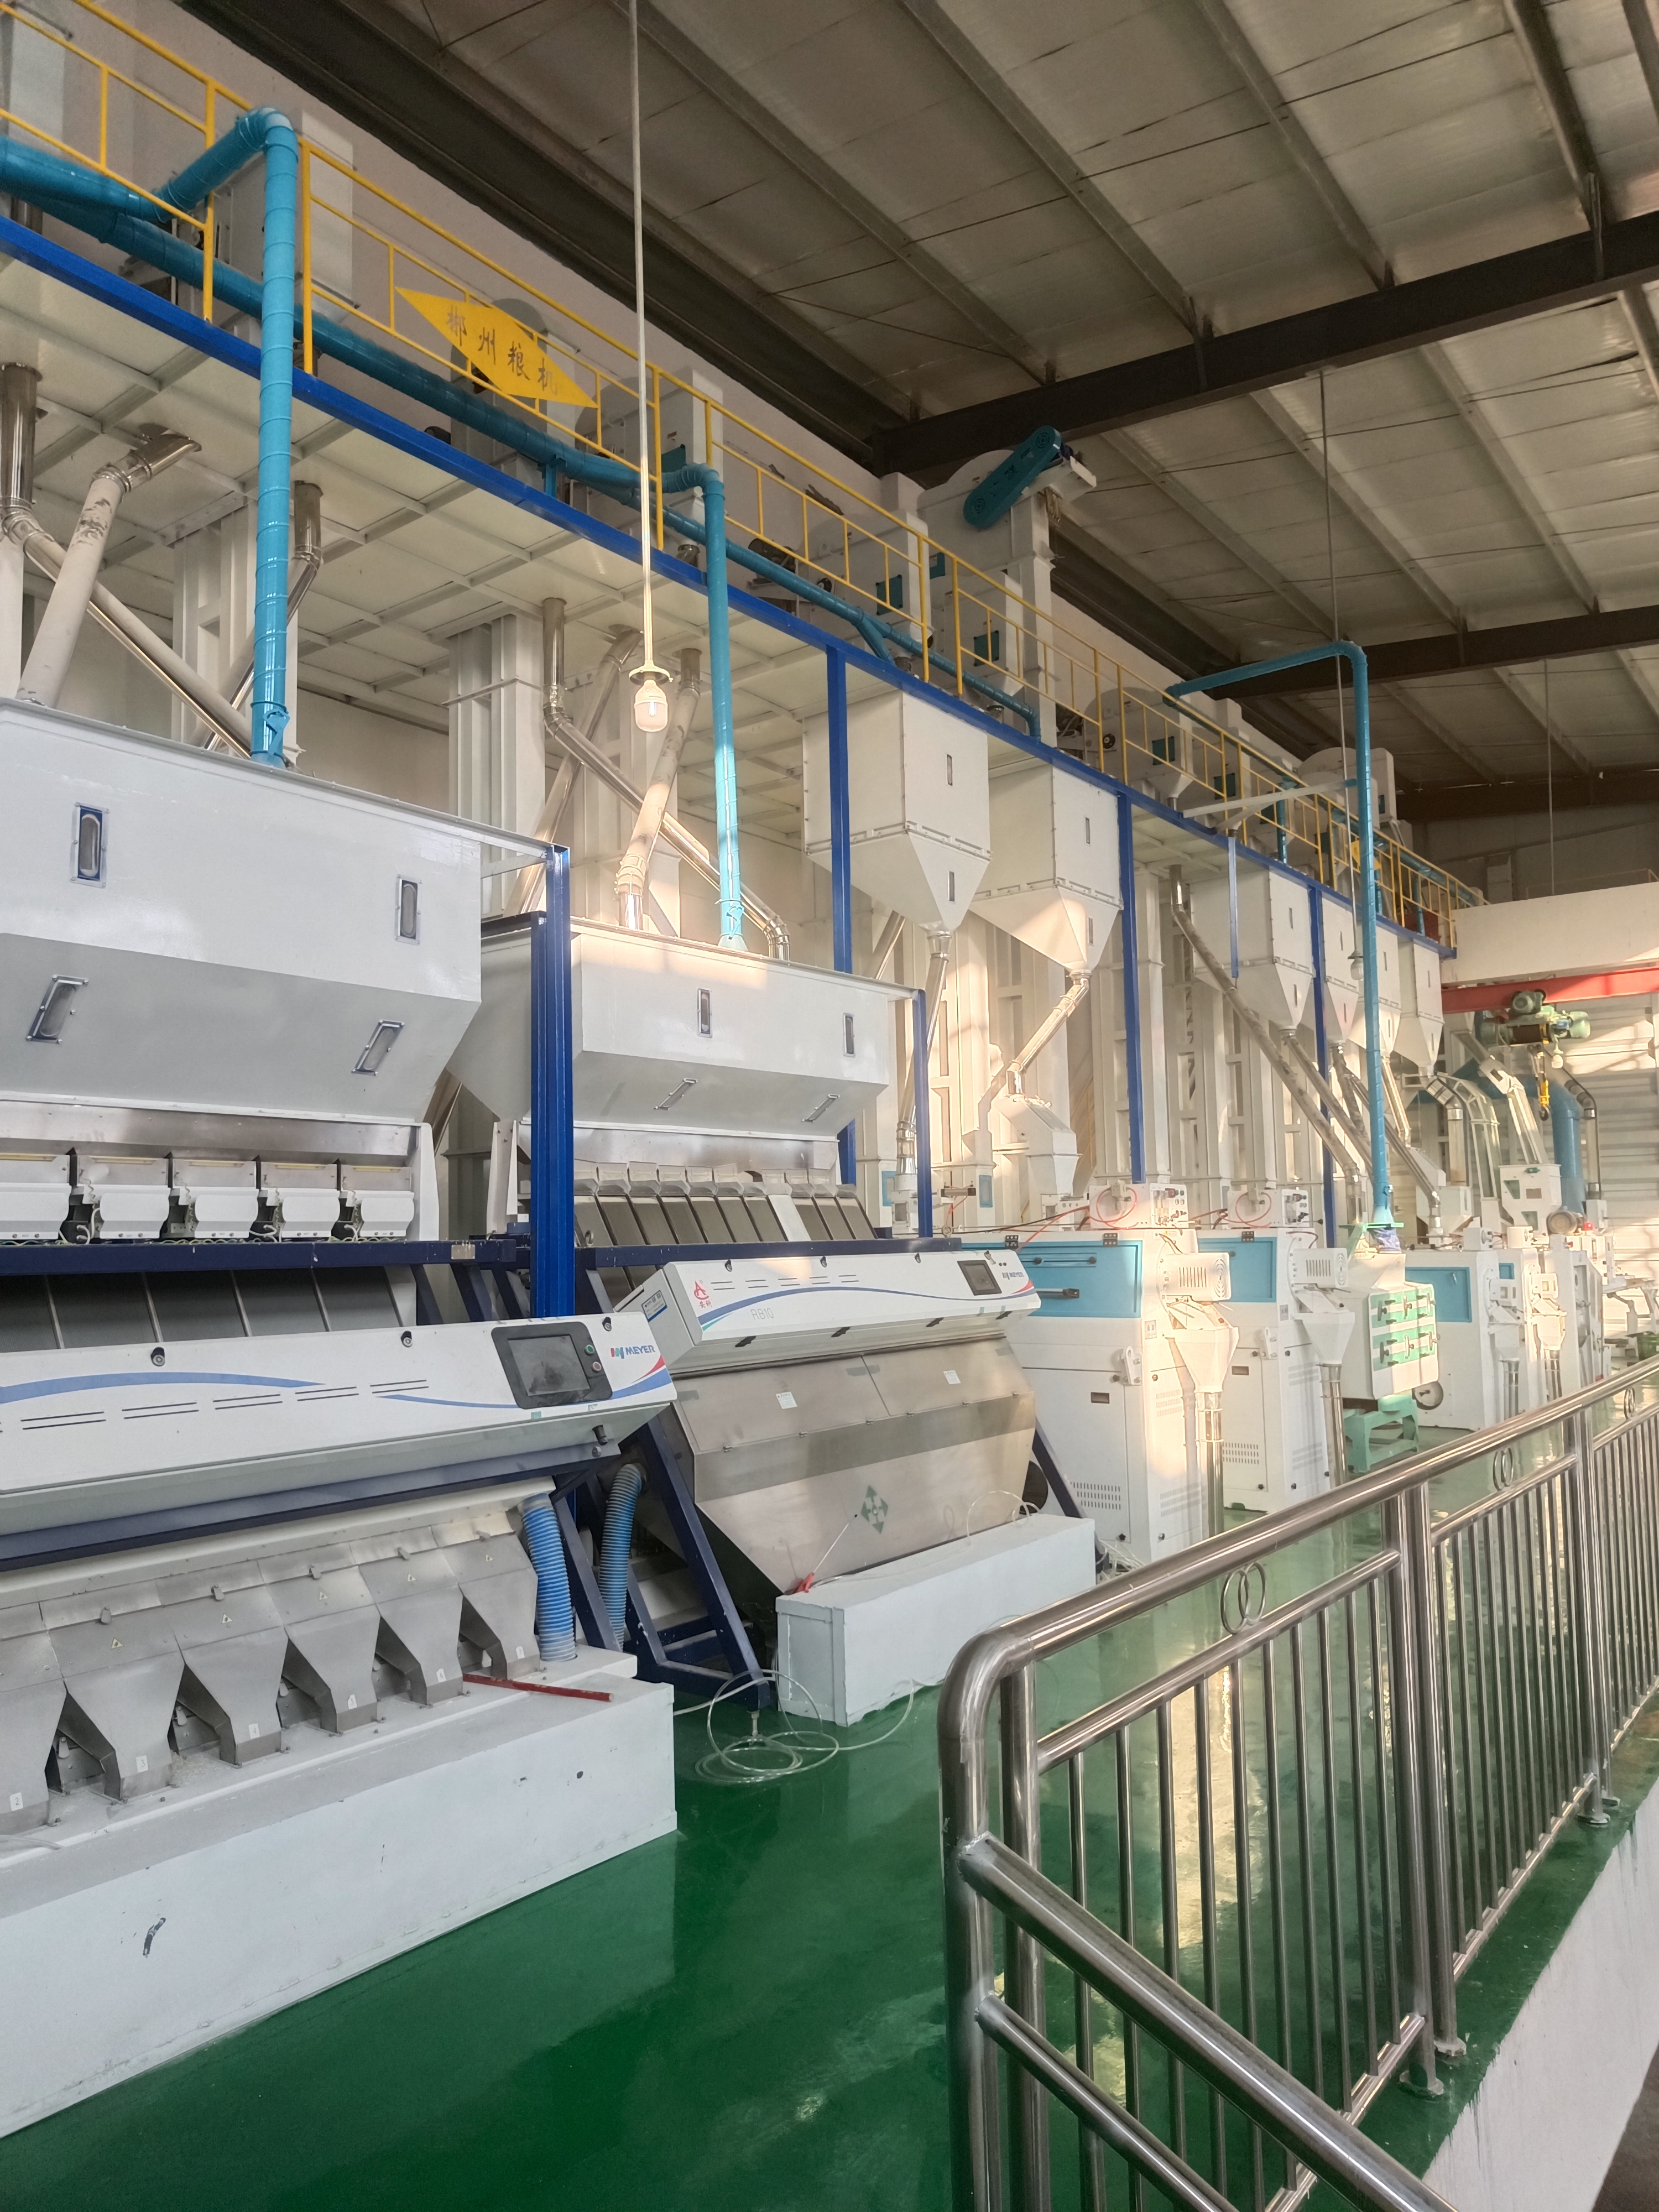 思南縣南江糧食購銷有限責任公司日產120噸大米生產線技術改造升級。